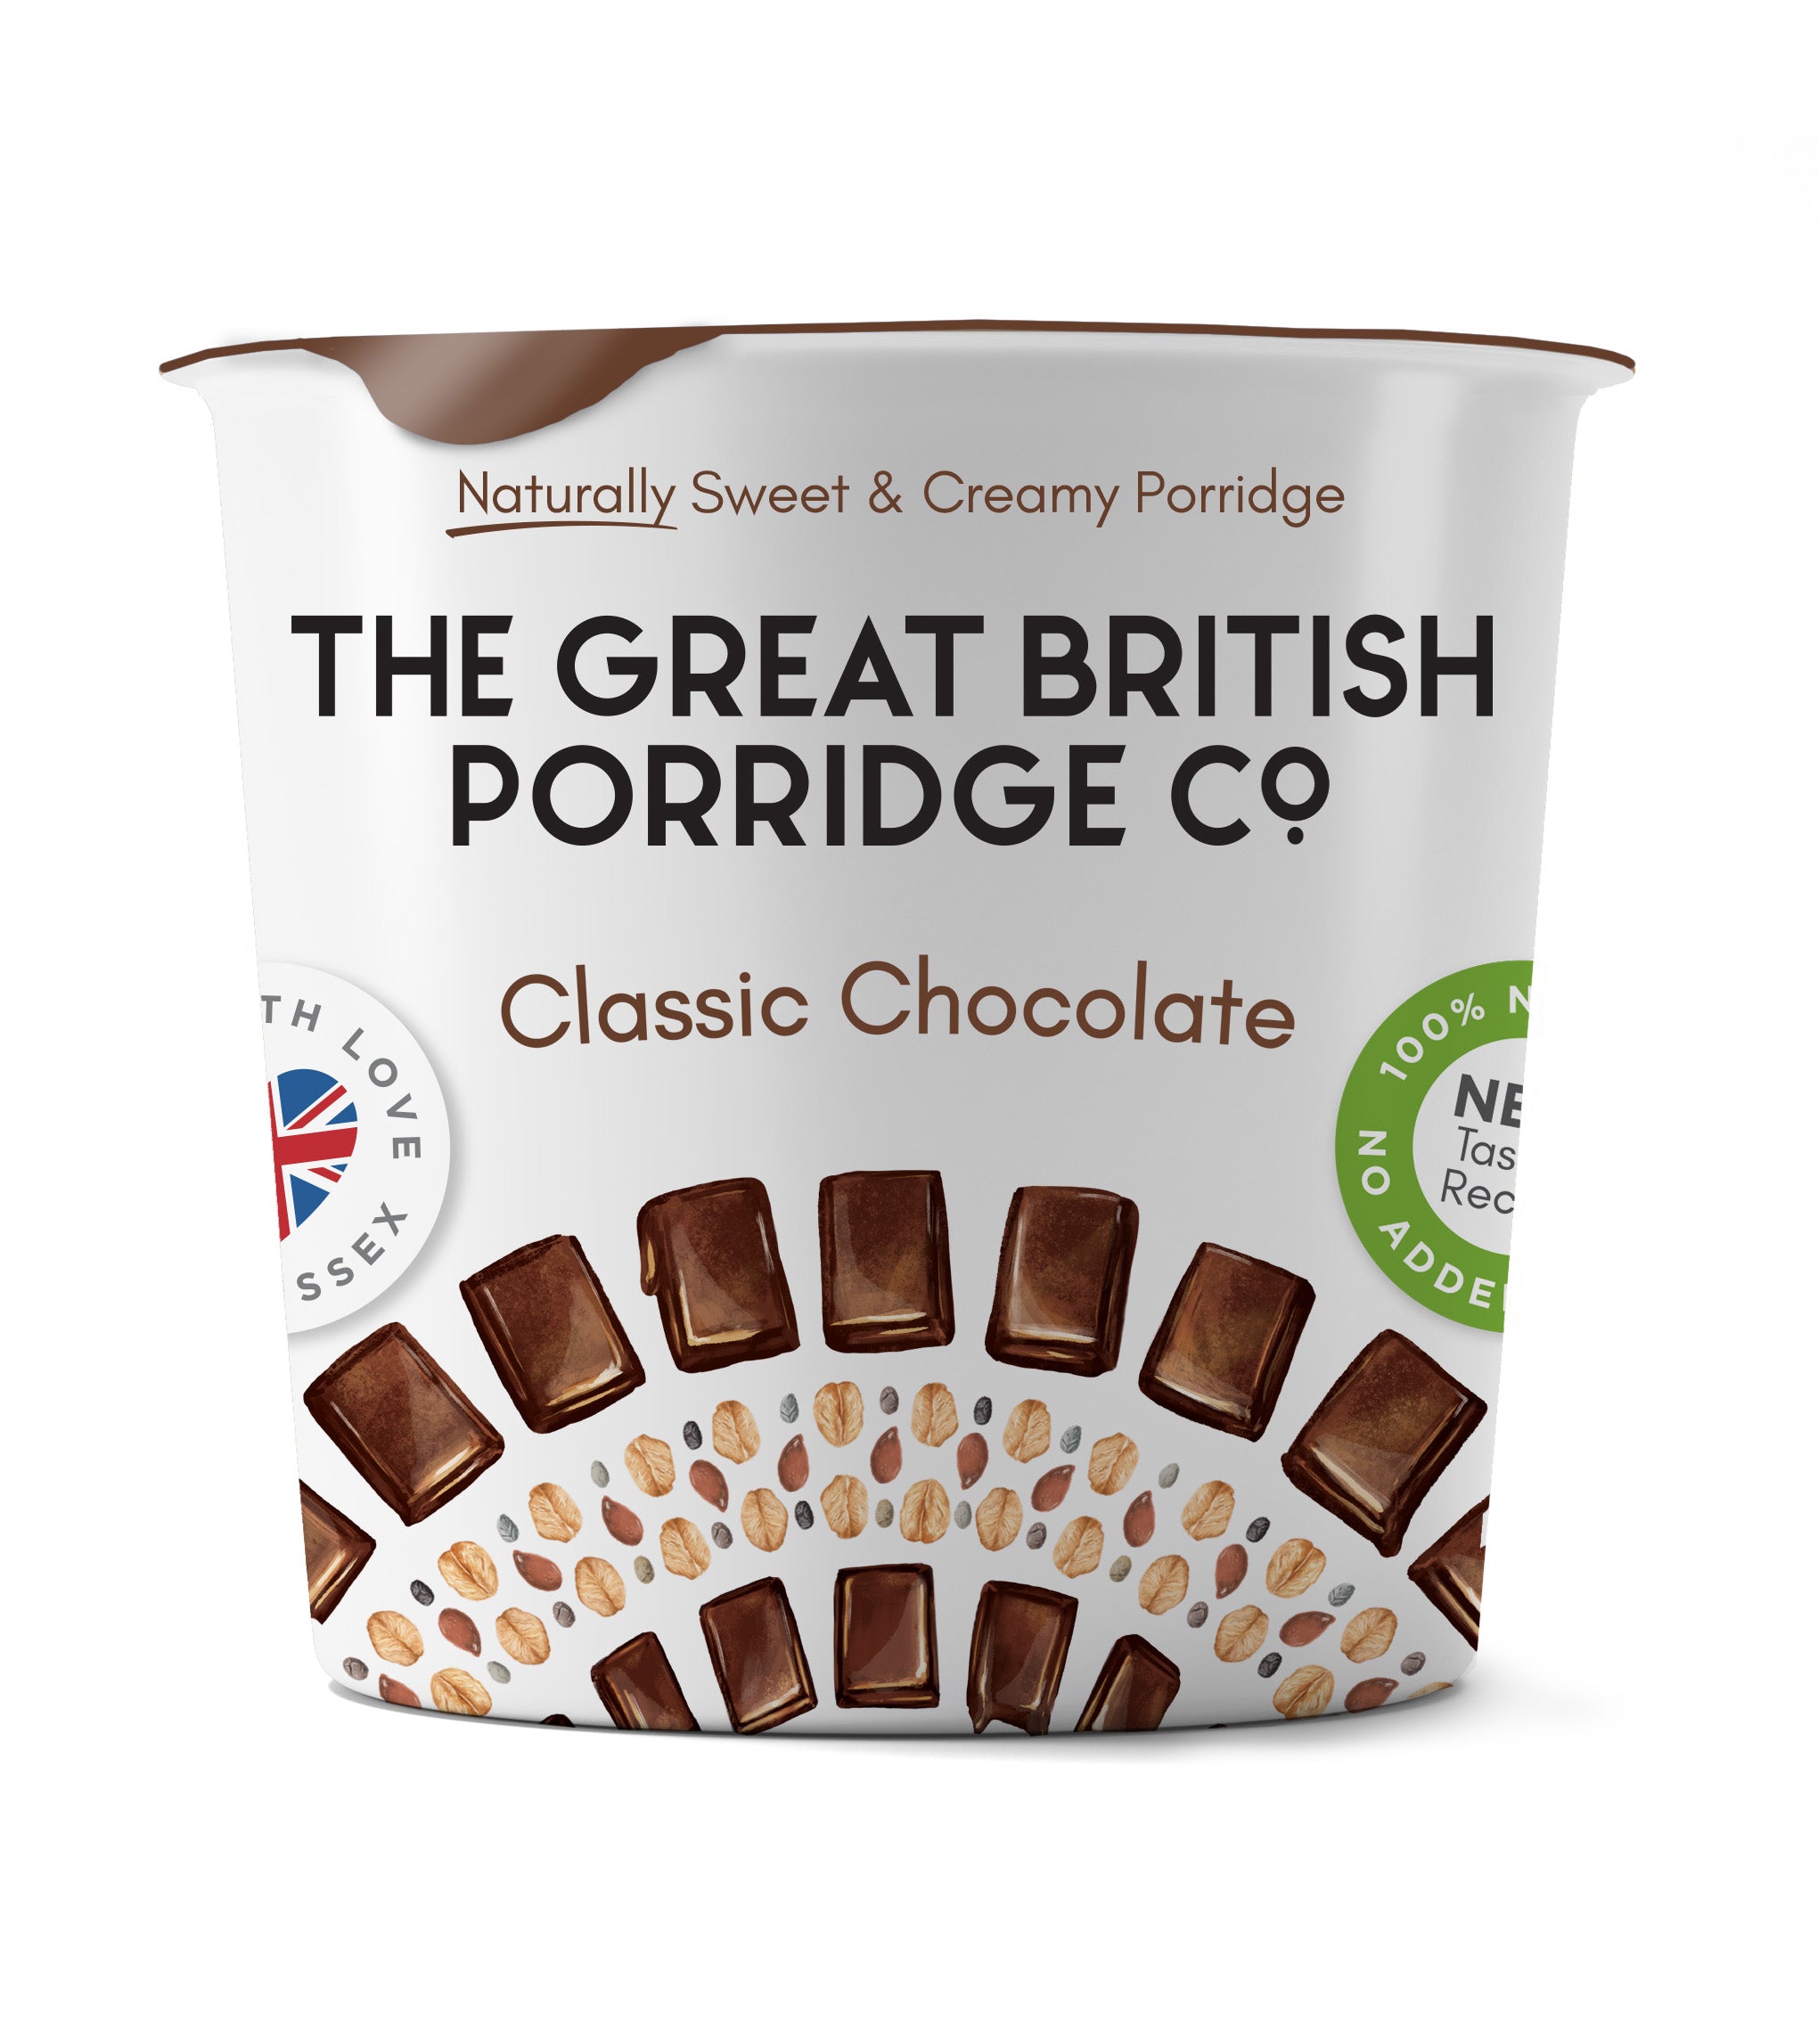 Classic Chocolate Porridge Pots – The Great British Porridge Co